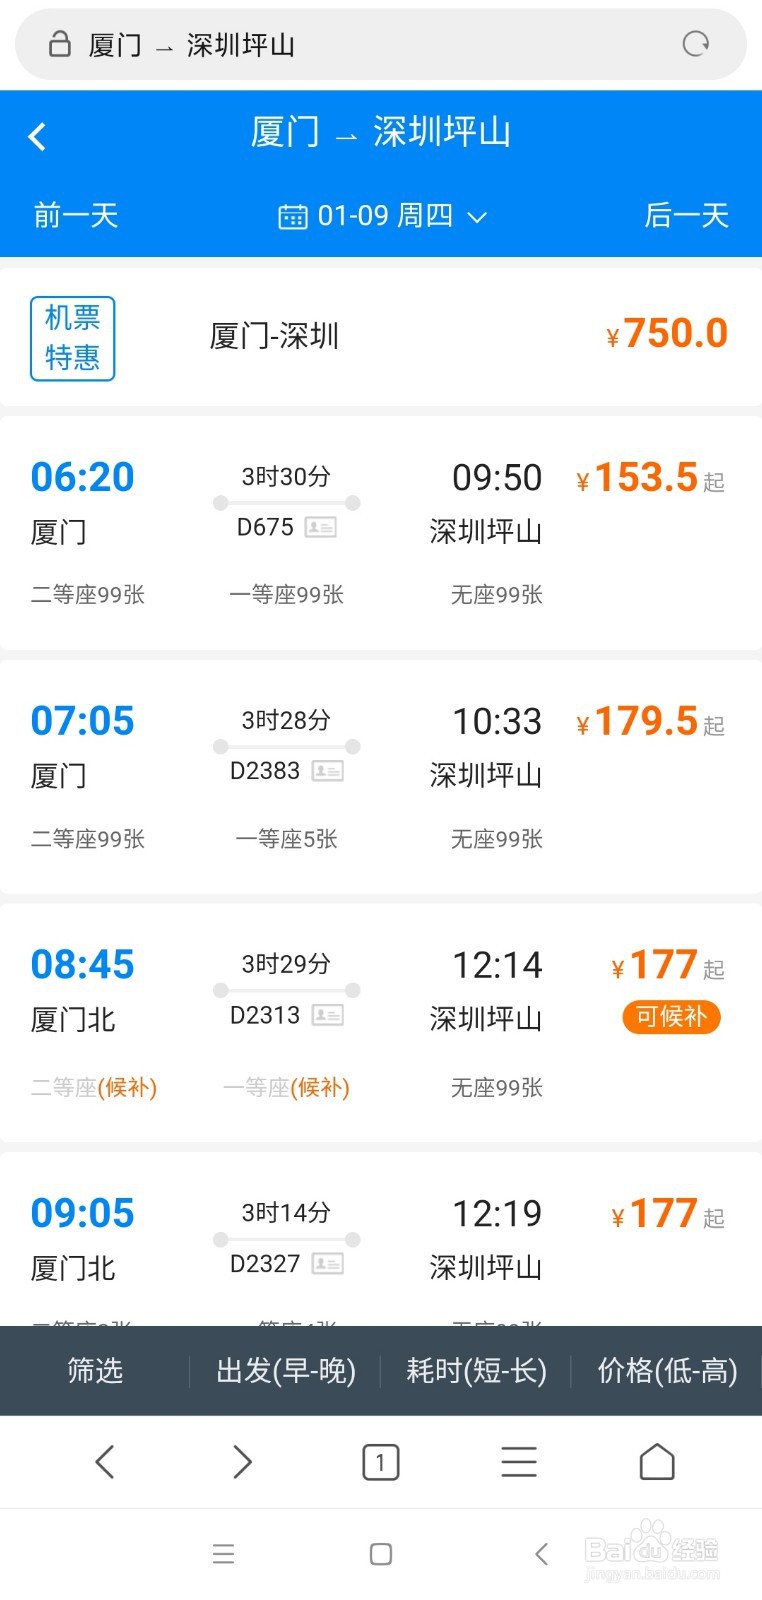 厦门到深圳高铁时刻表如何查询